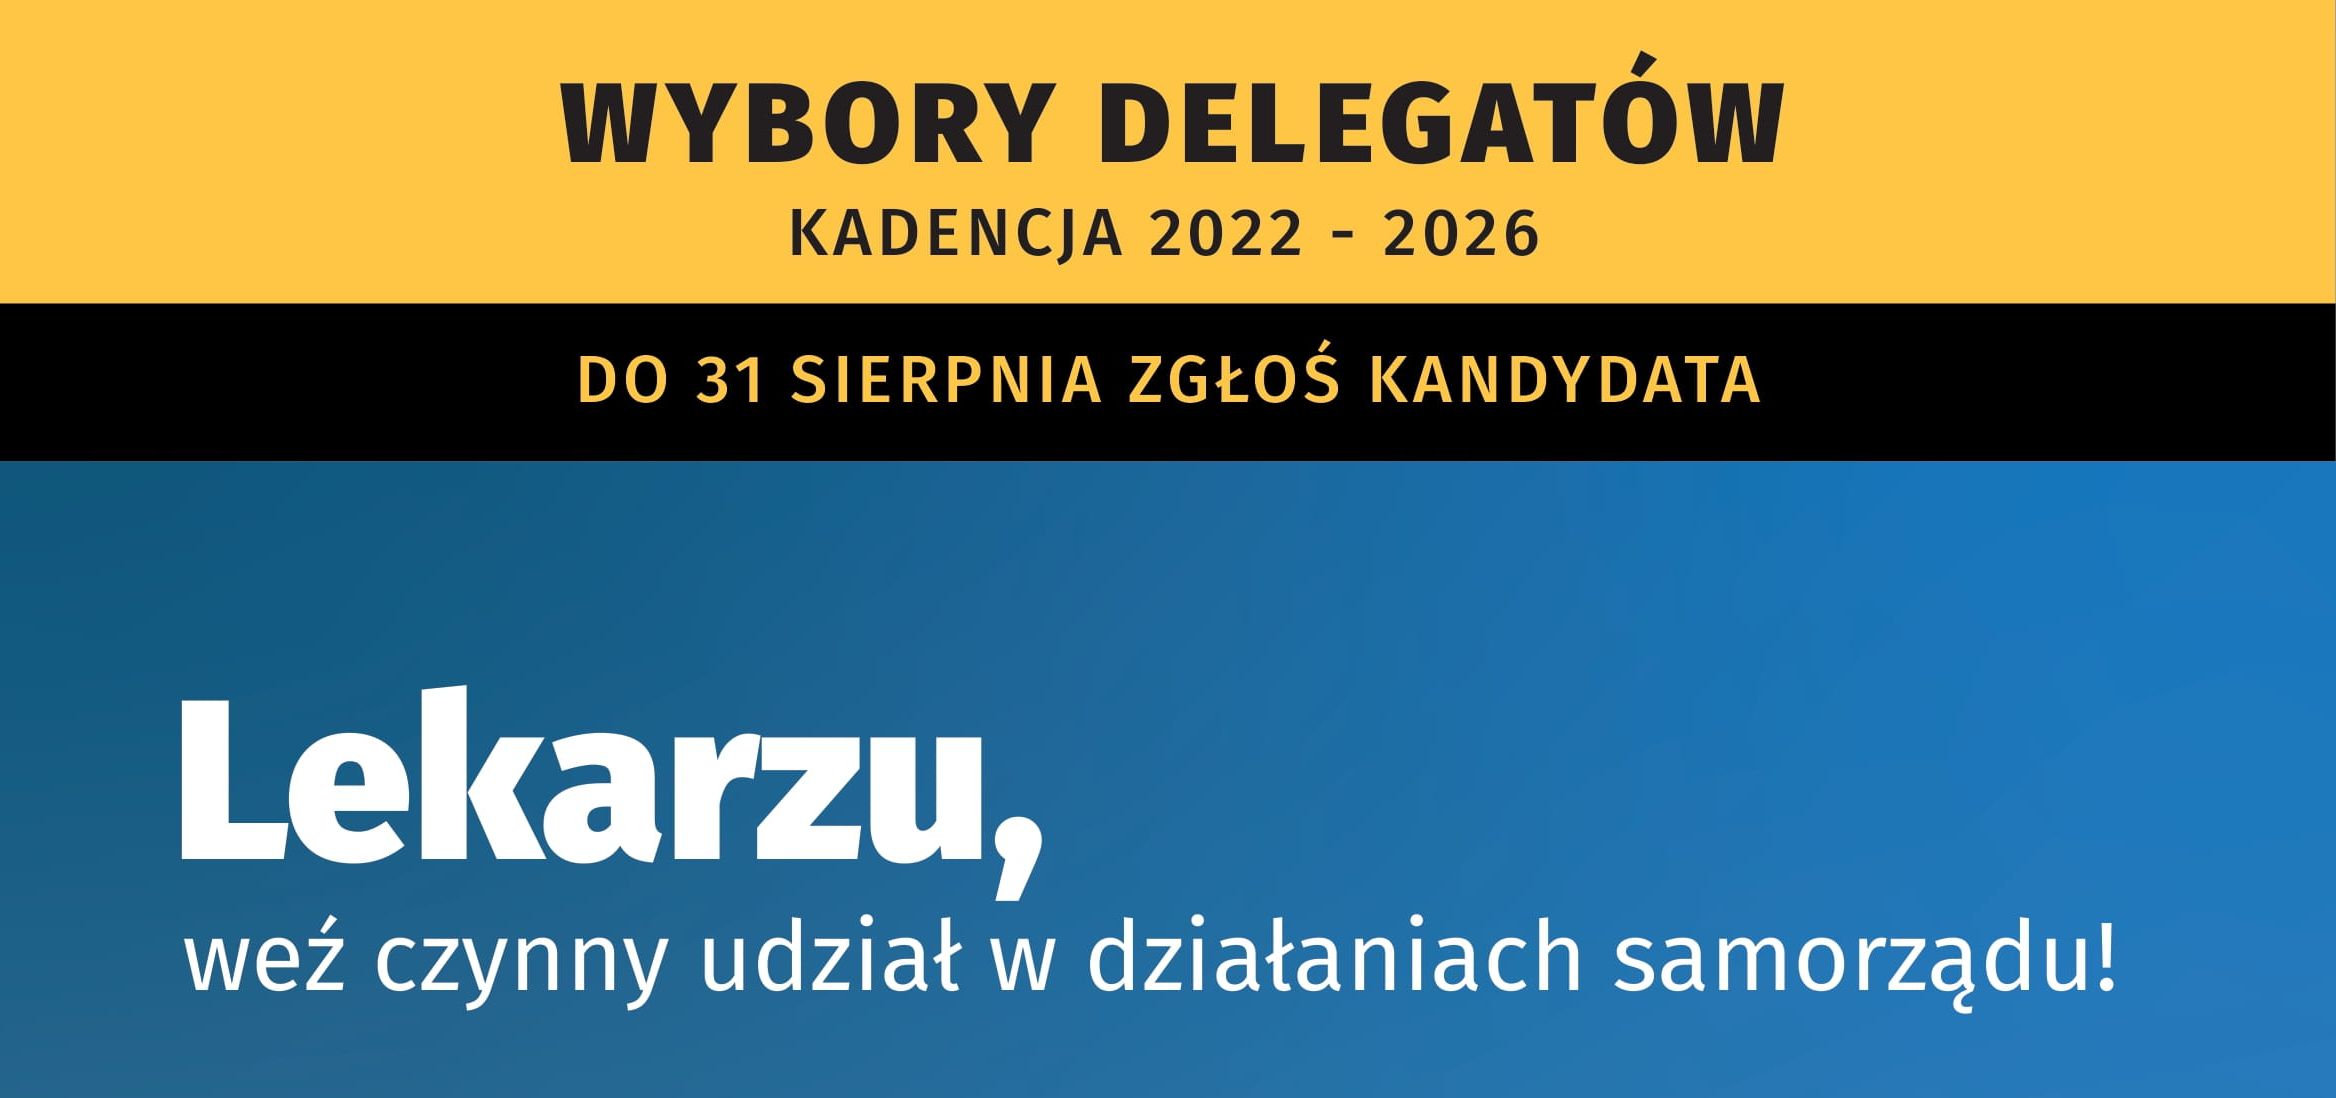 OIL w Warszawie Wybory delegatów foto